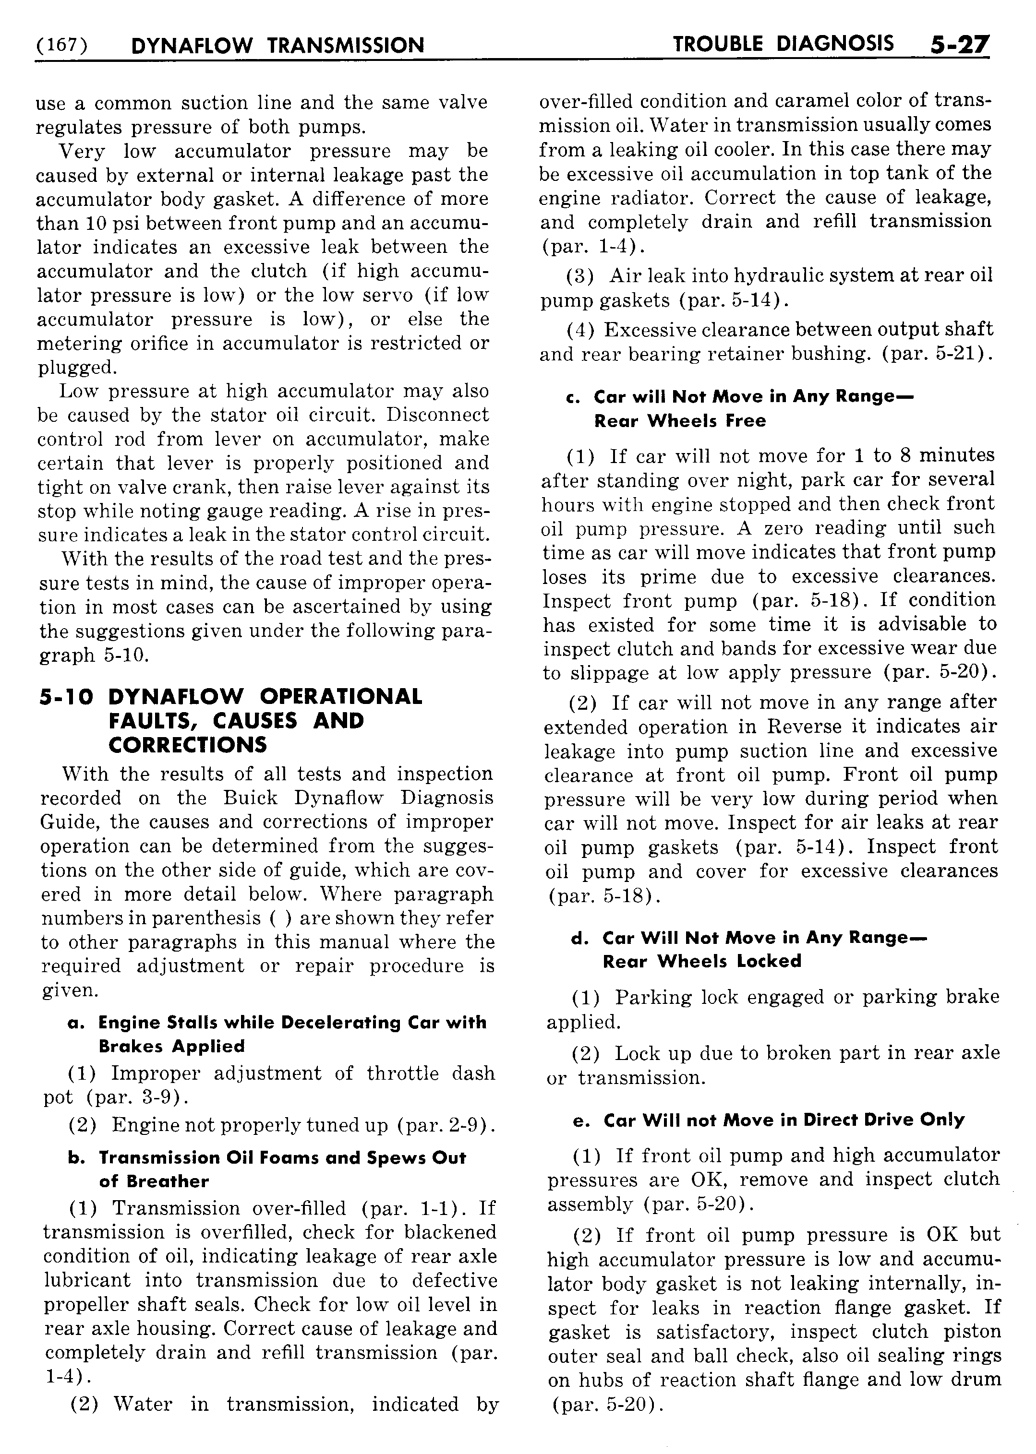 n_06 1955 Buick Shop Manual - Dynaflow-027-027.jpg